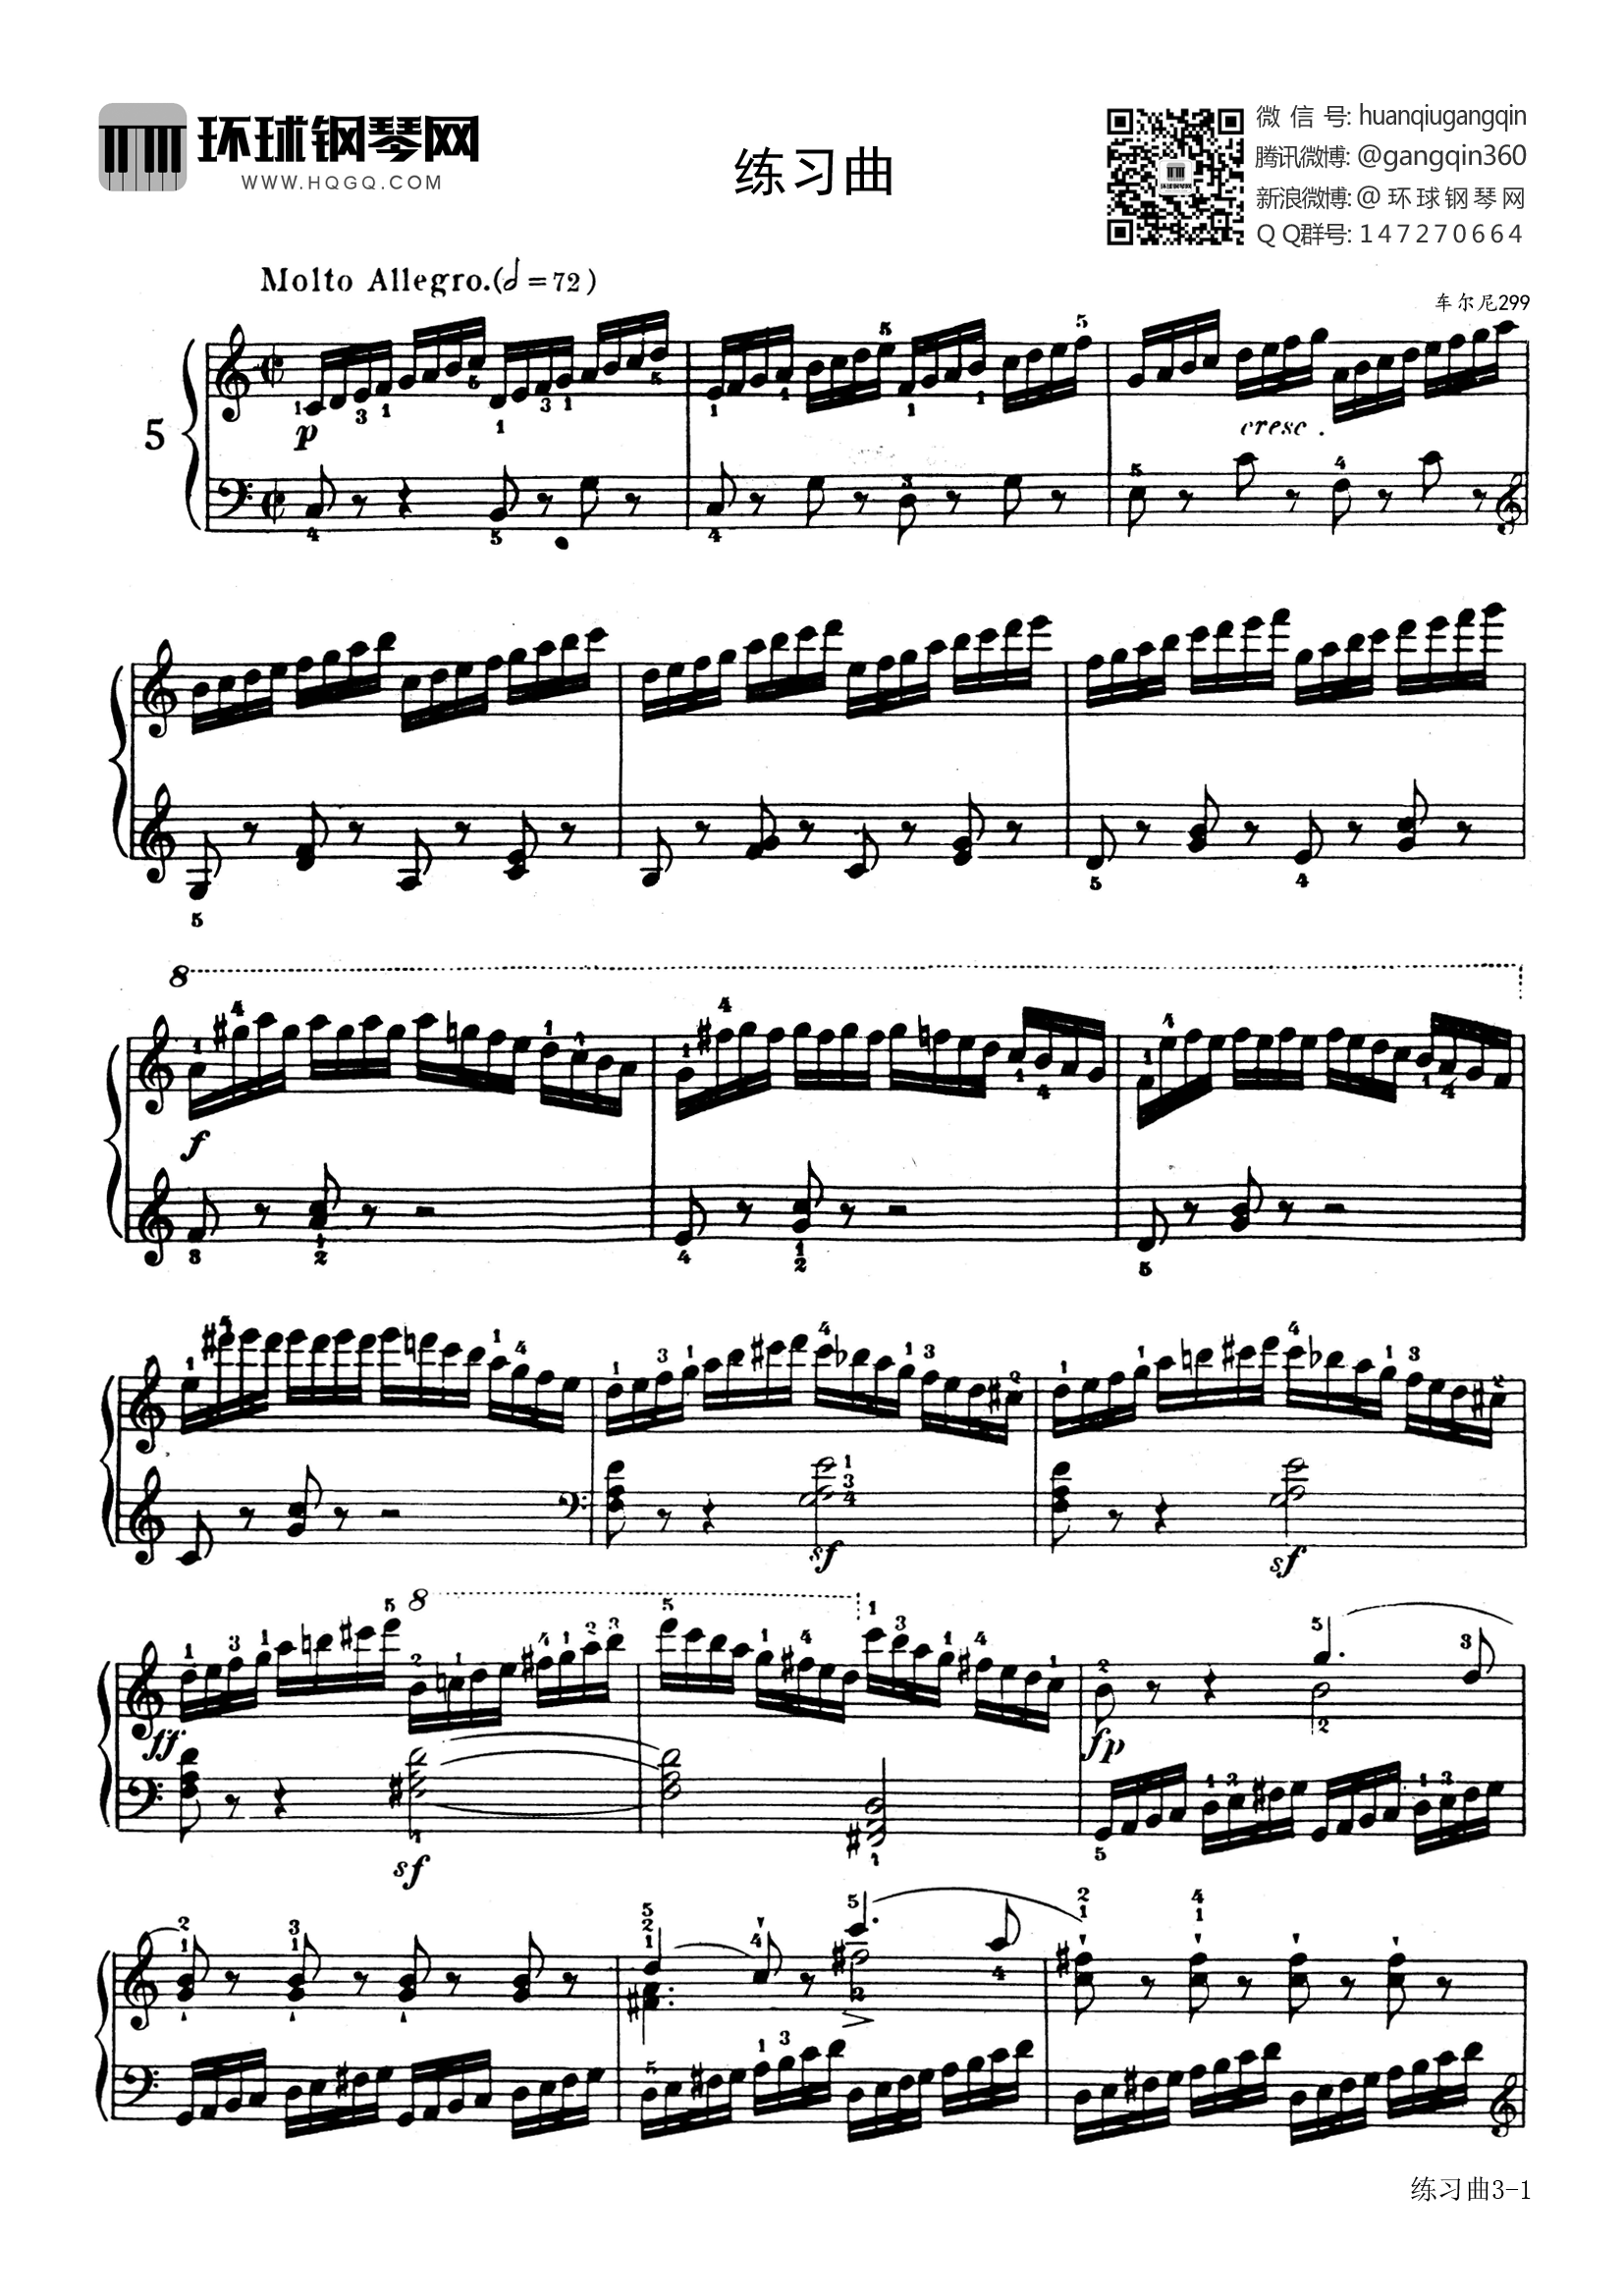 练习曲第5首(选自《车尔尼快速练习曲》作品299)钢琴谱-环球钢琴网